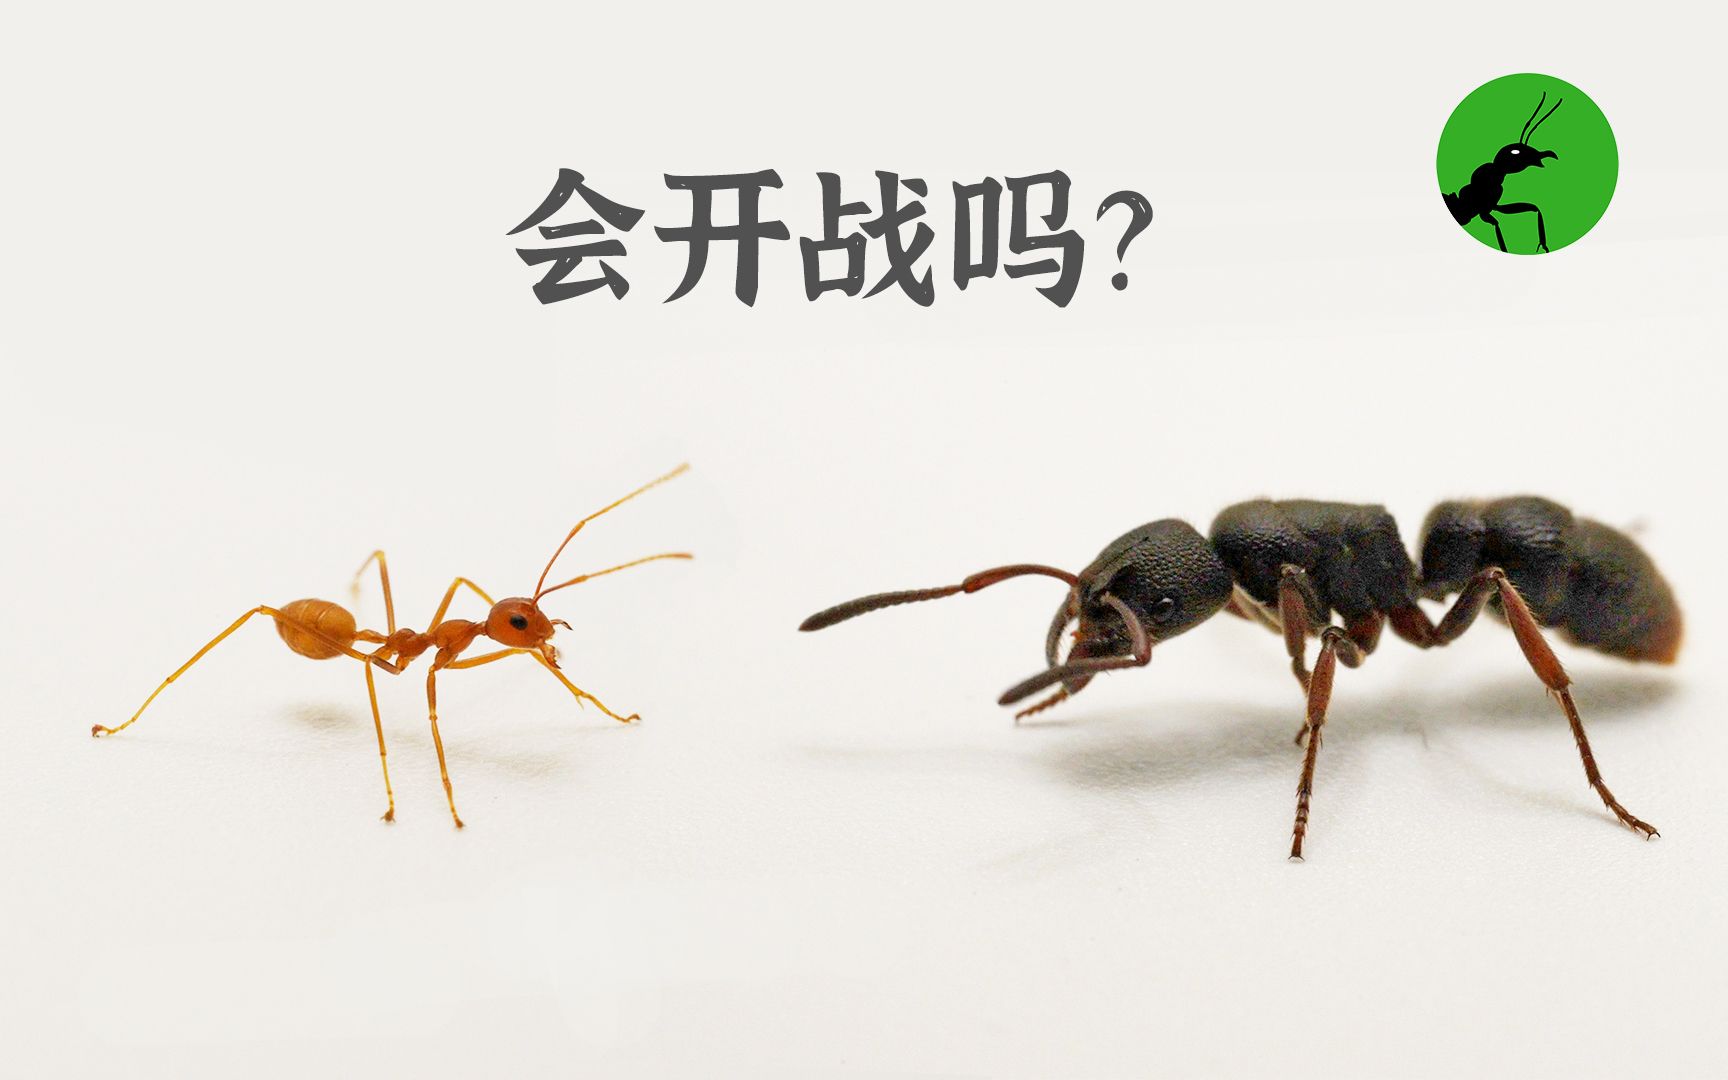 食人蚁可吞噬人类，一分钟啃成白骨（真实事件） - 知乎